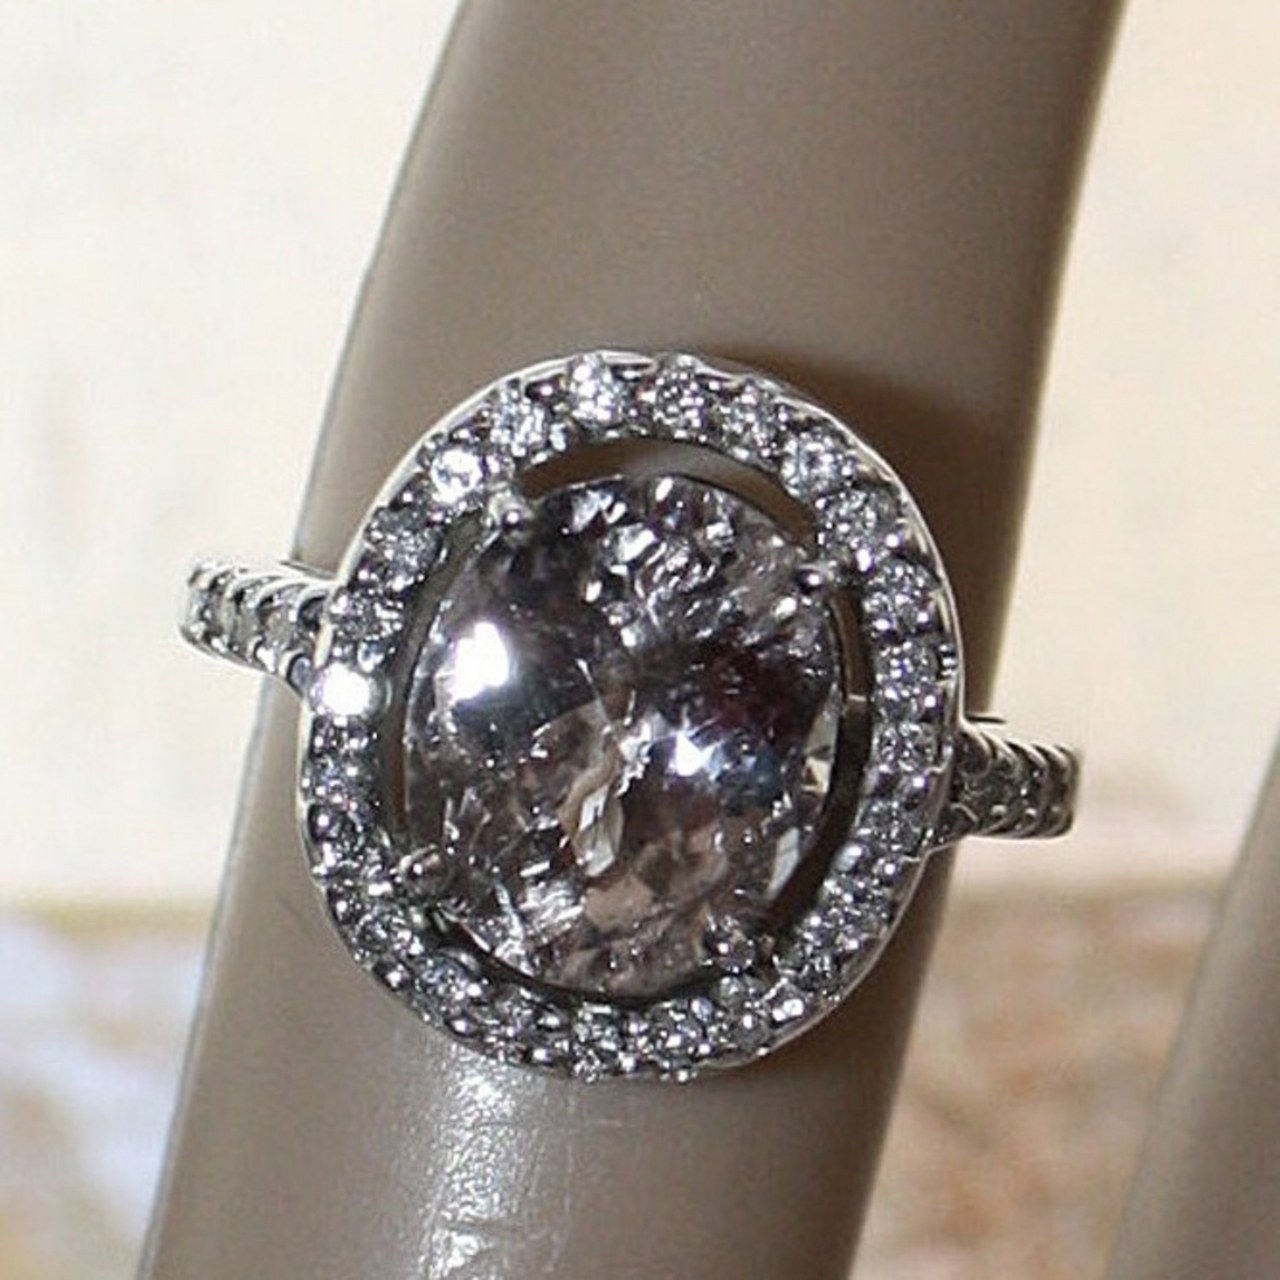 7 engagement rings inspired by kat von d black diamond skull 1218